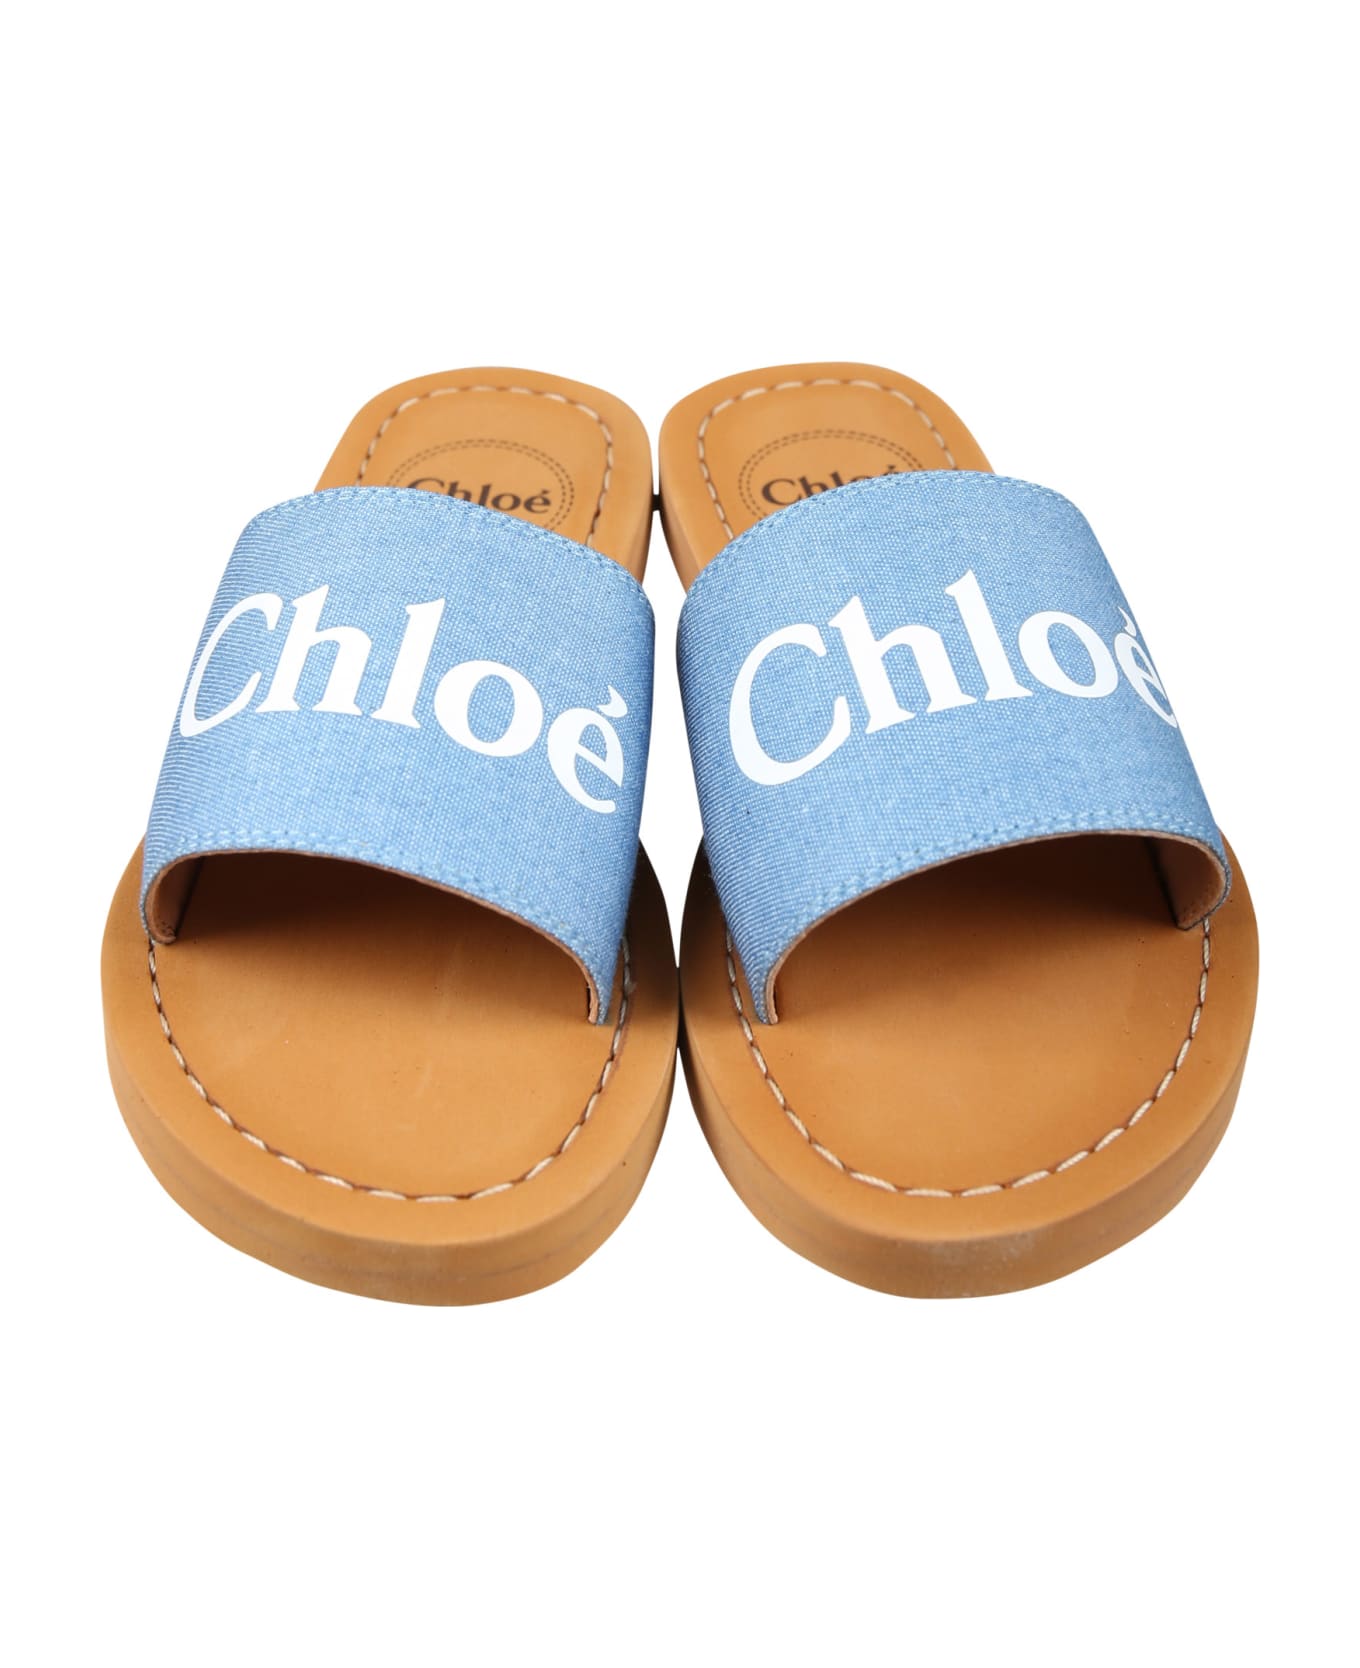 Chloé Denim Slippers For Girl With Logo - Denim シューズ